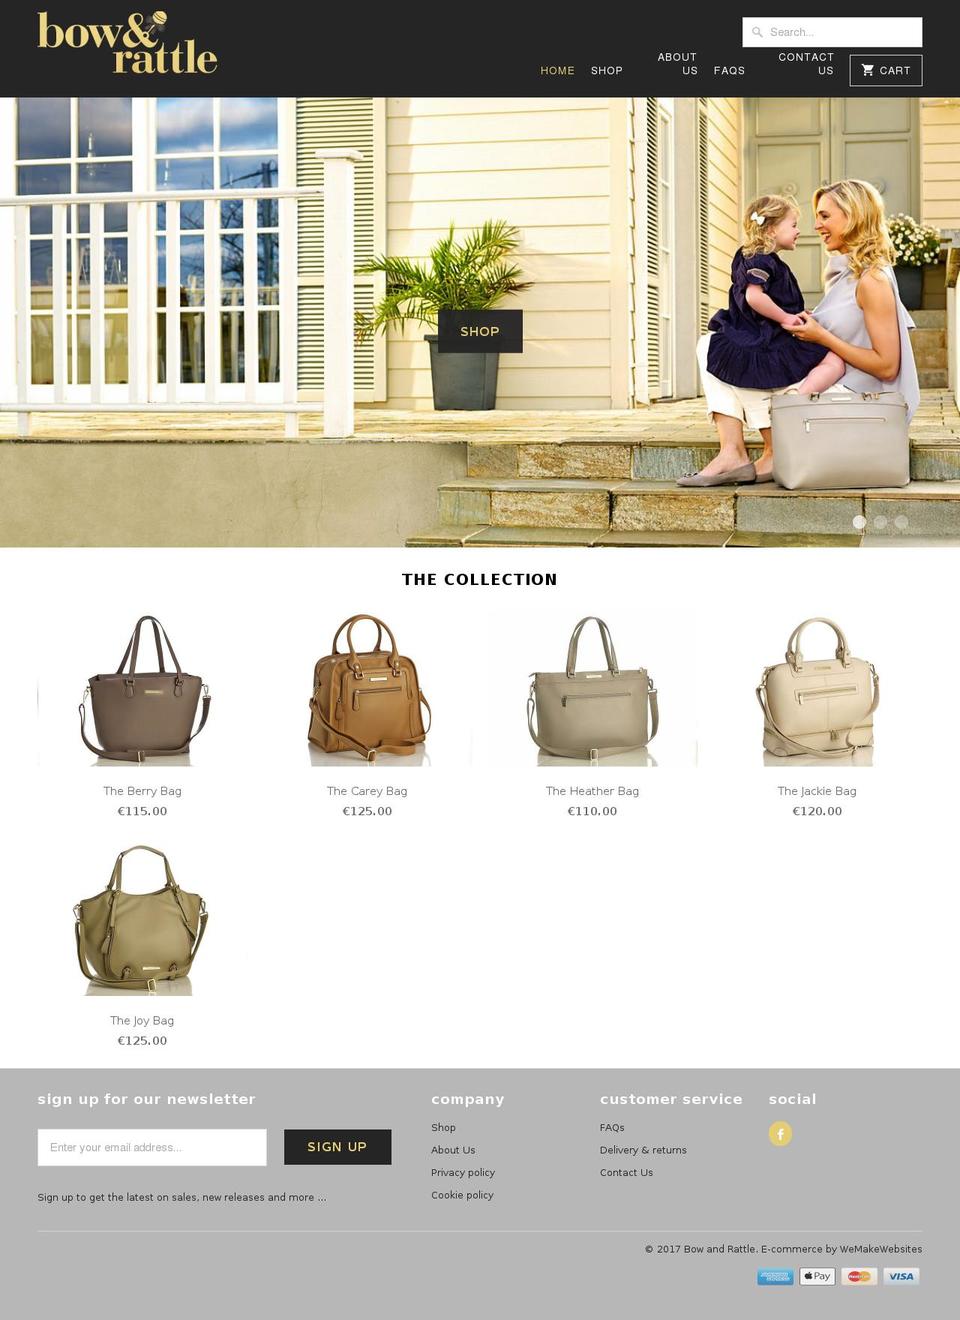 bowandrattle.com shopify website screenshot